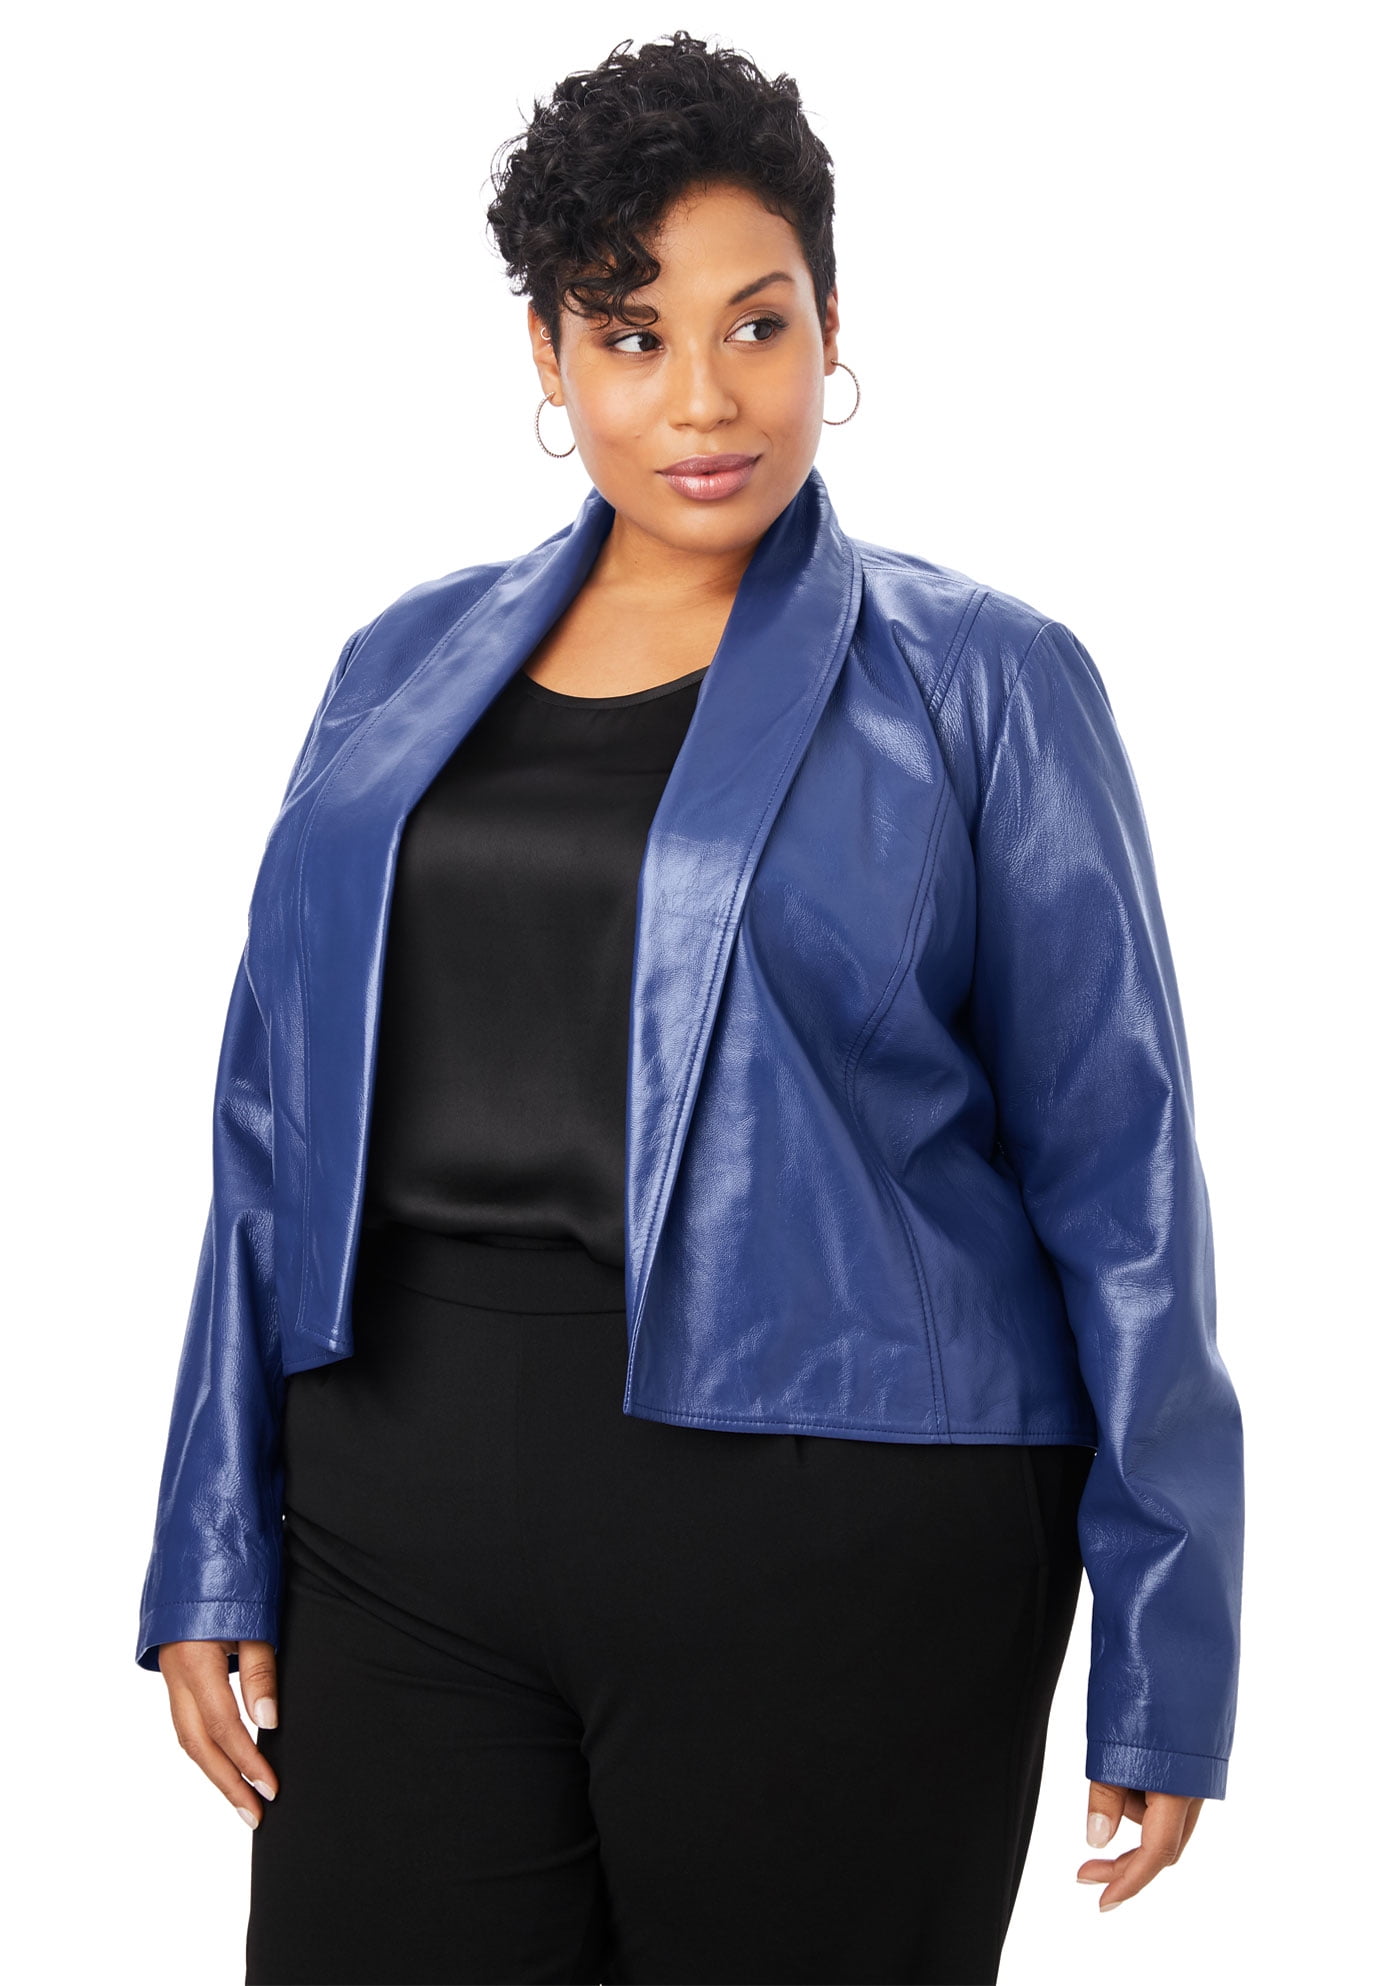 Jessica London Women's Plus Size Leather Shrug Jacket Leather Jacket 